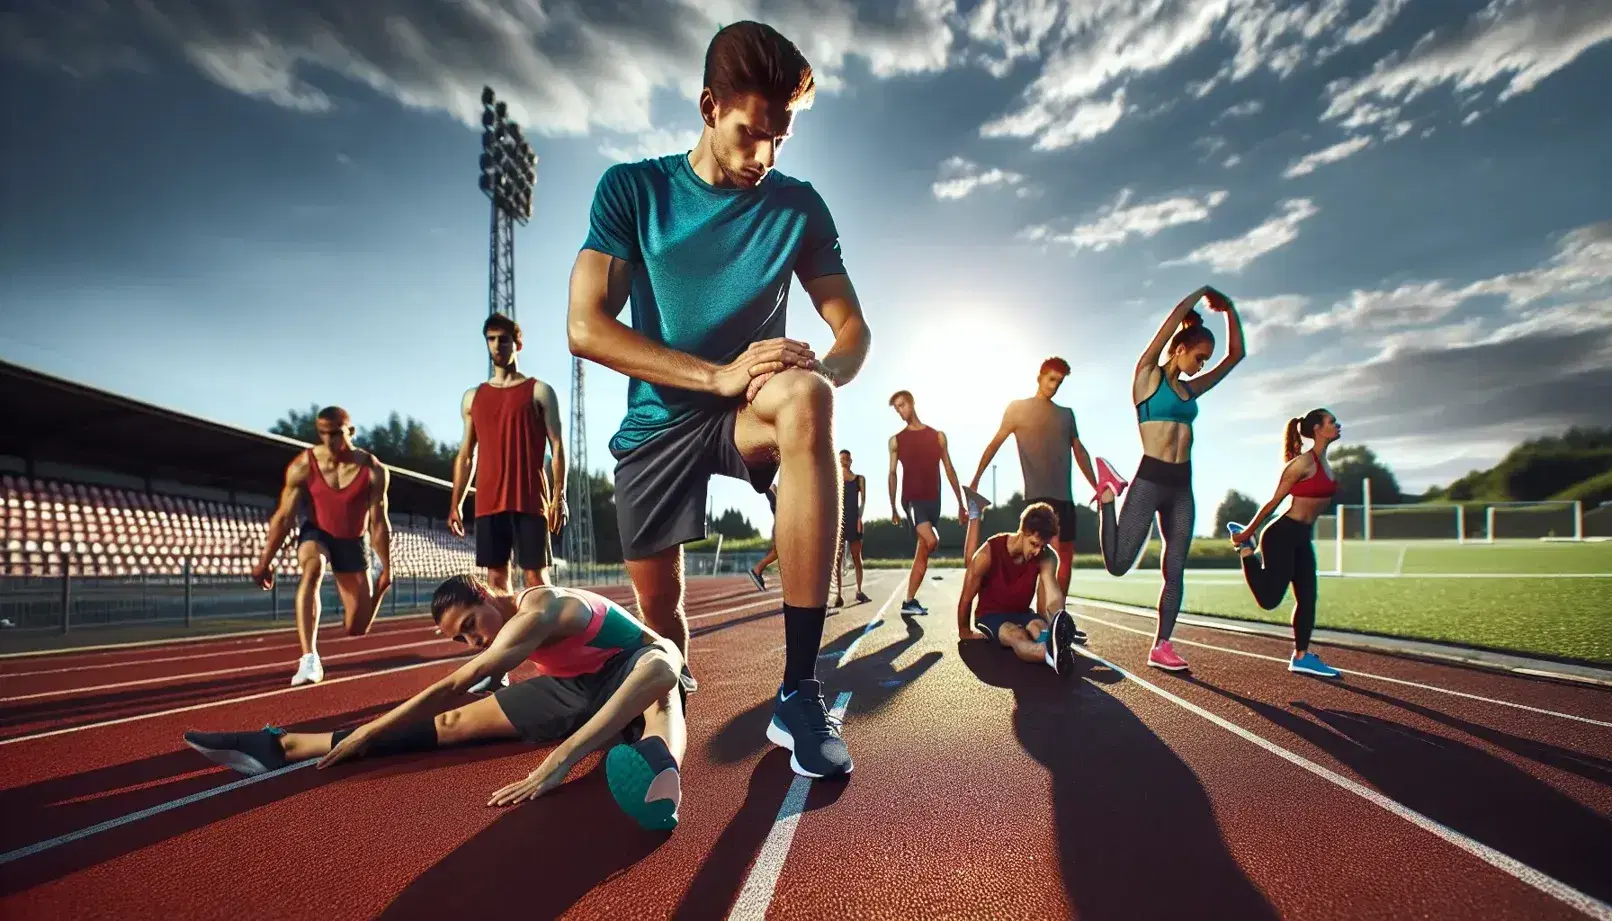 Gruppo di persone di diverse età che si allena su pista di atletica all'aperto, eseguendo esercizi di riscaldamento sotto un cielo sereno.